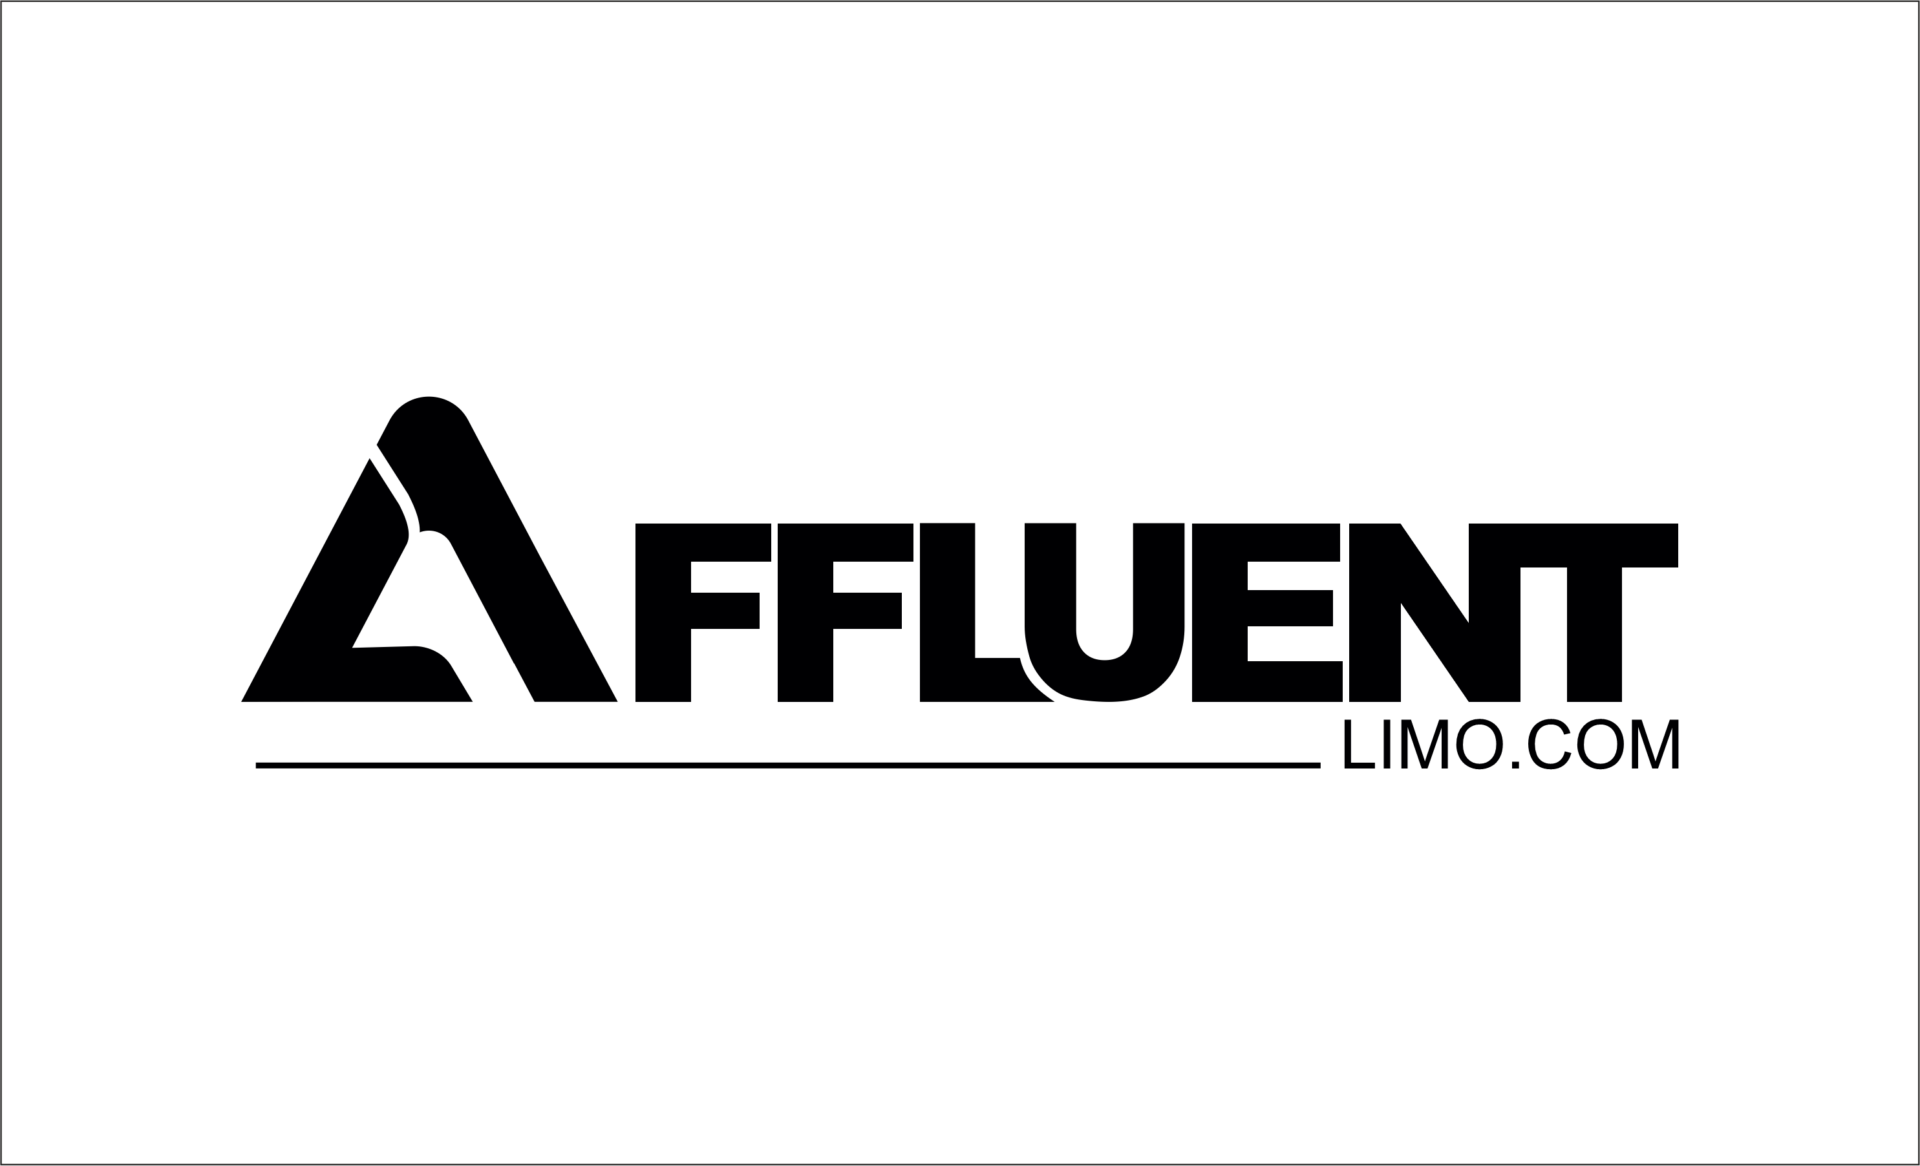 AFFLUENT LIMO logo